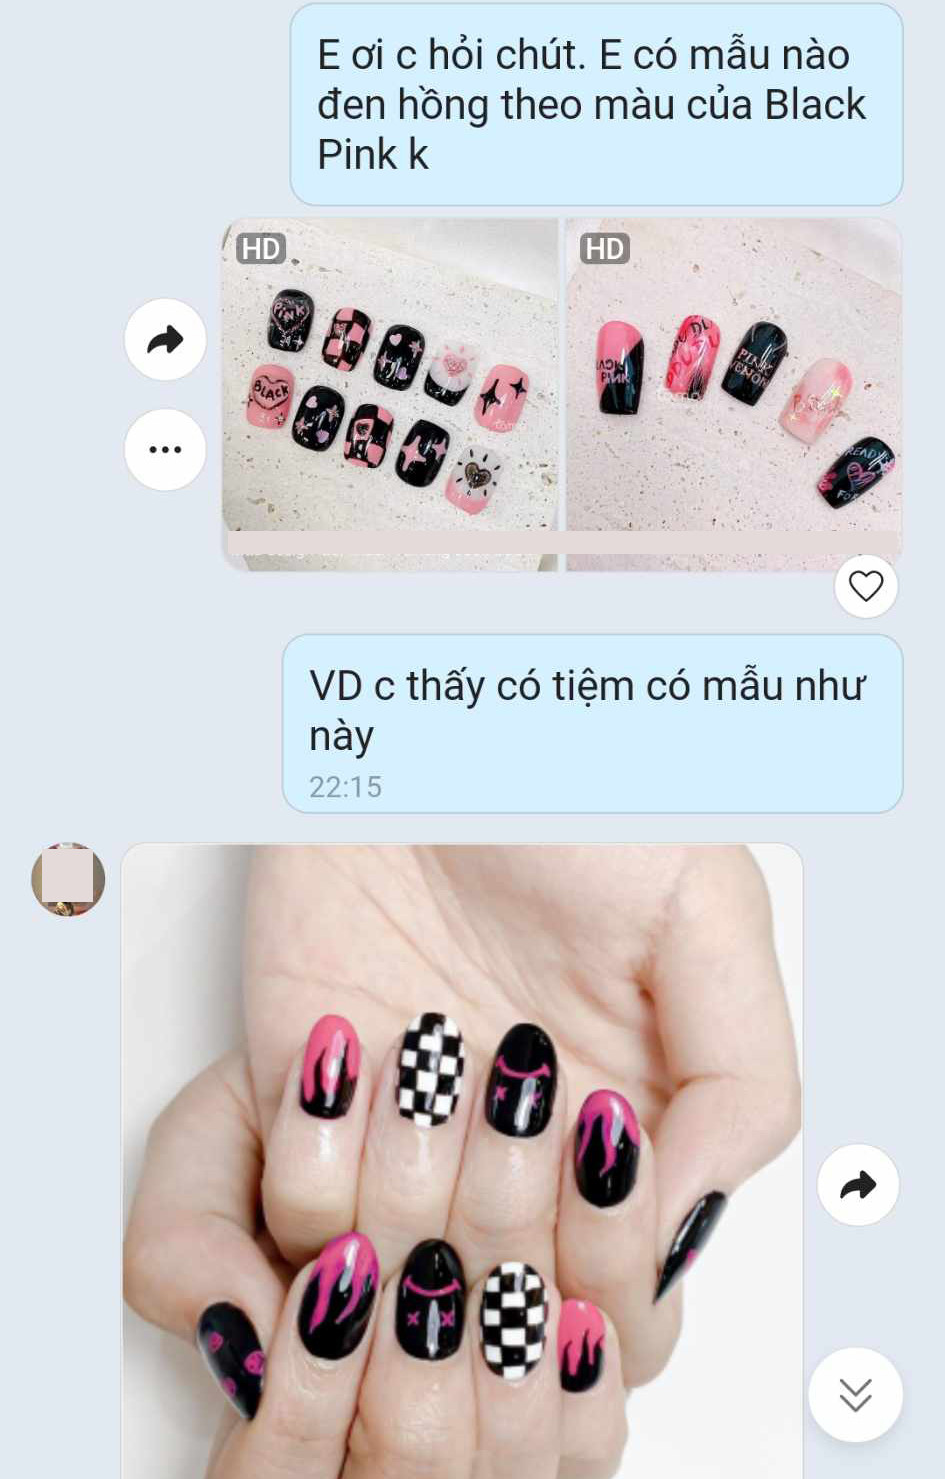 Chồng ‘phát điên’ vì vợ U60 sơn móng tay đen hồng 'đu trend' Black Pink - 1